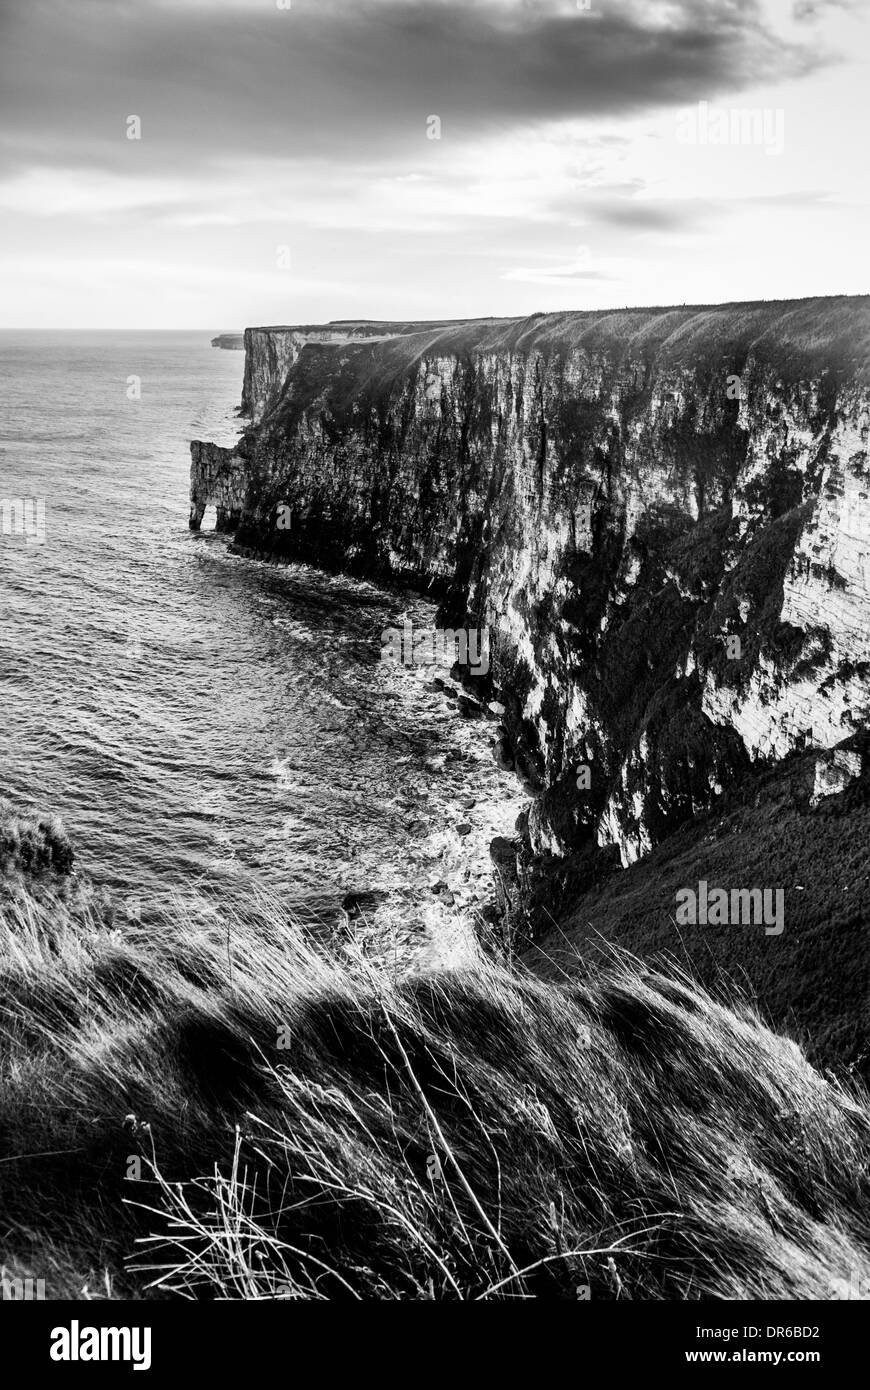 Chute du site RSPB de Bempton Cliffs sur la côte est de l'Angleterre Banque D'Images